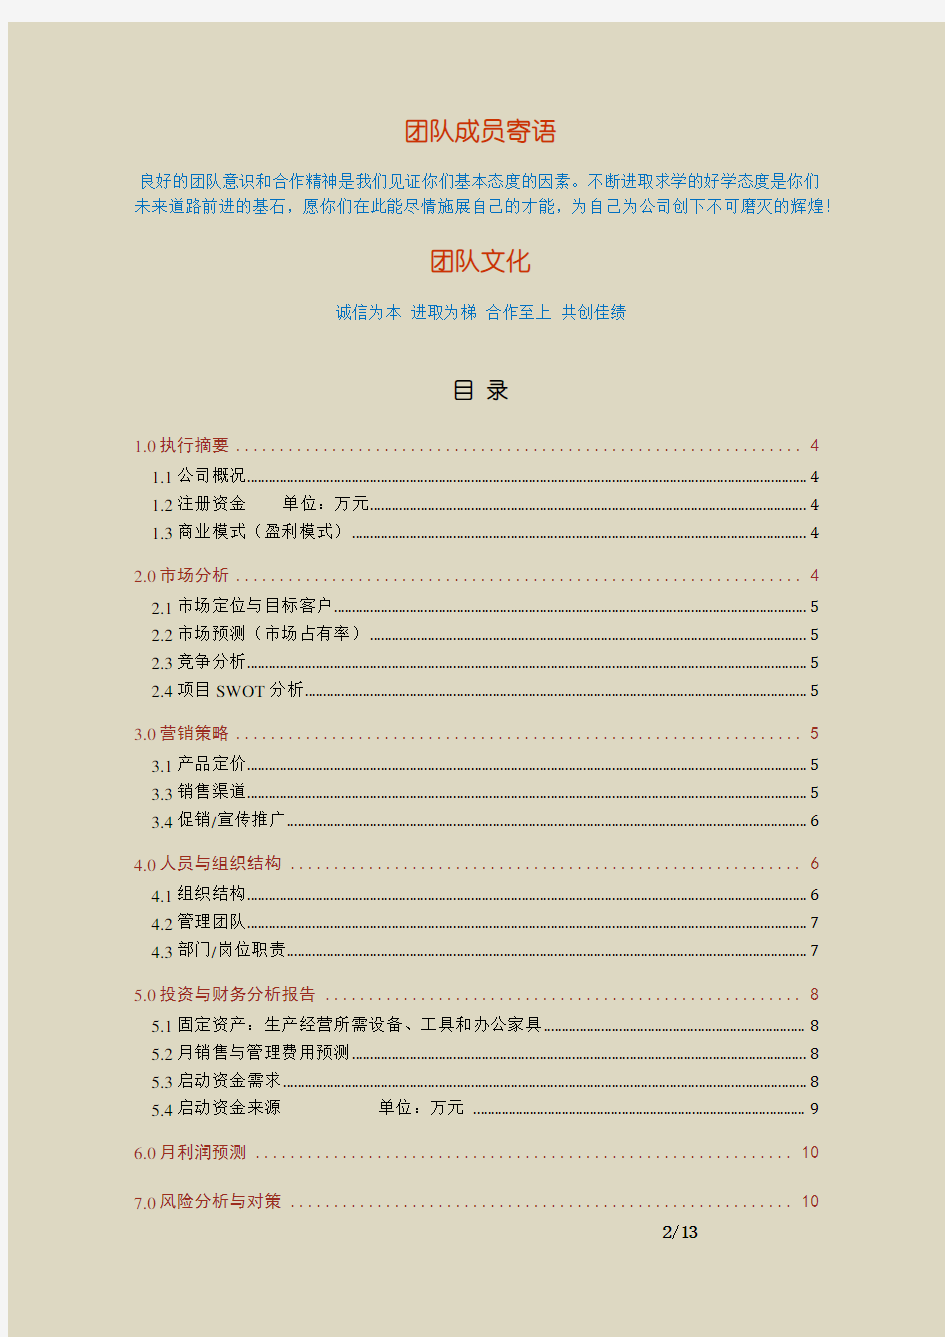 【范例】上海交通大学创业大赛优秀商业计划书范例